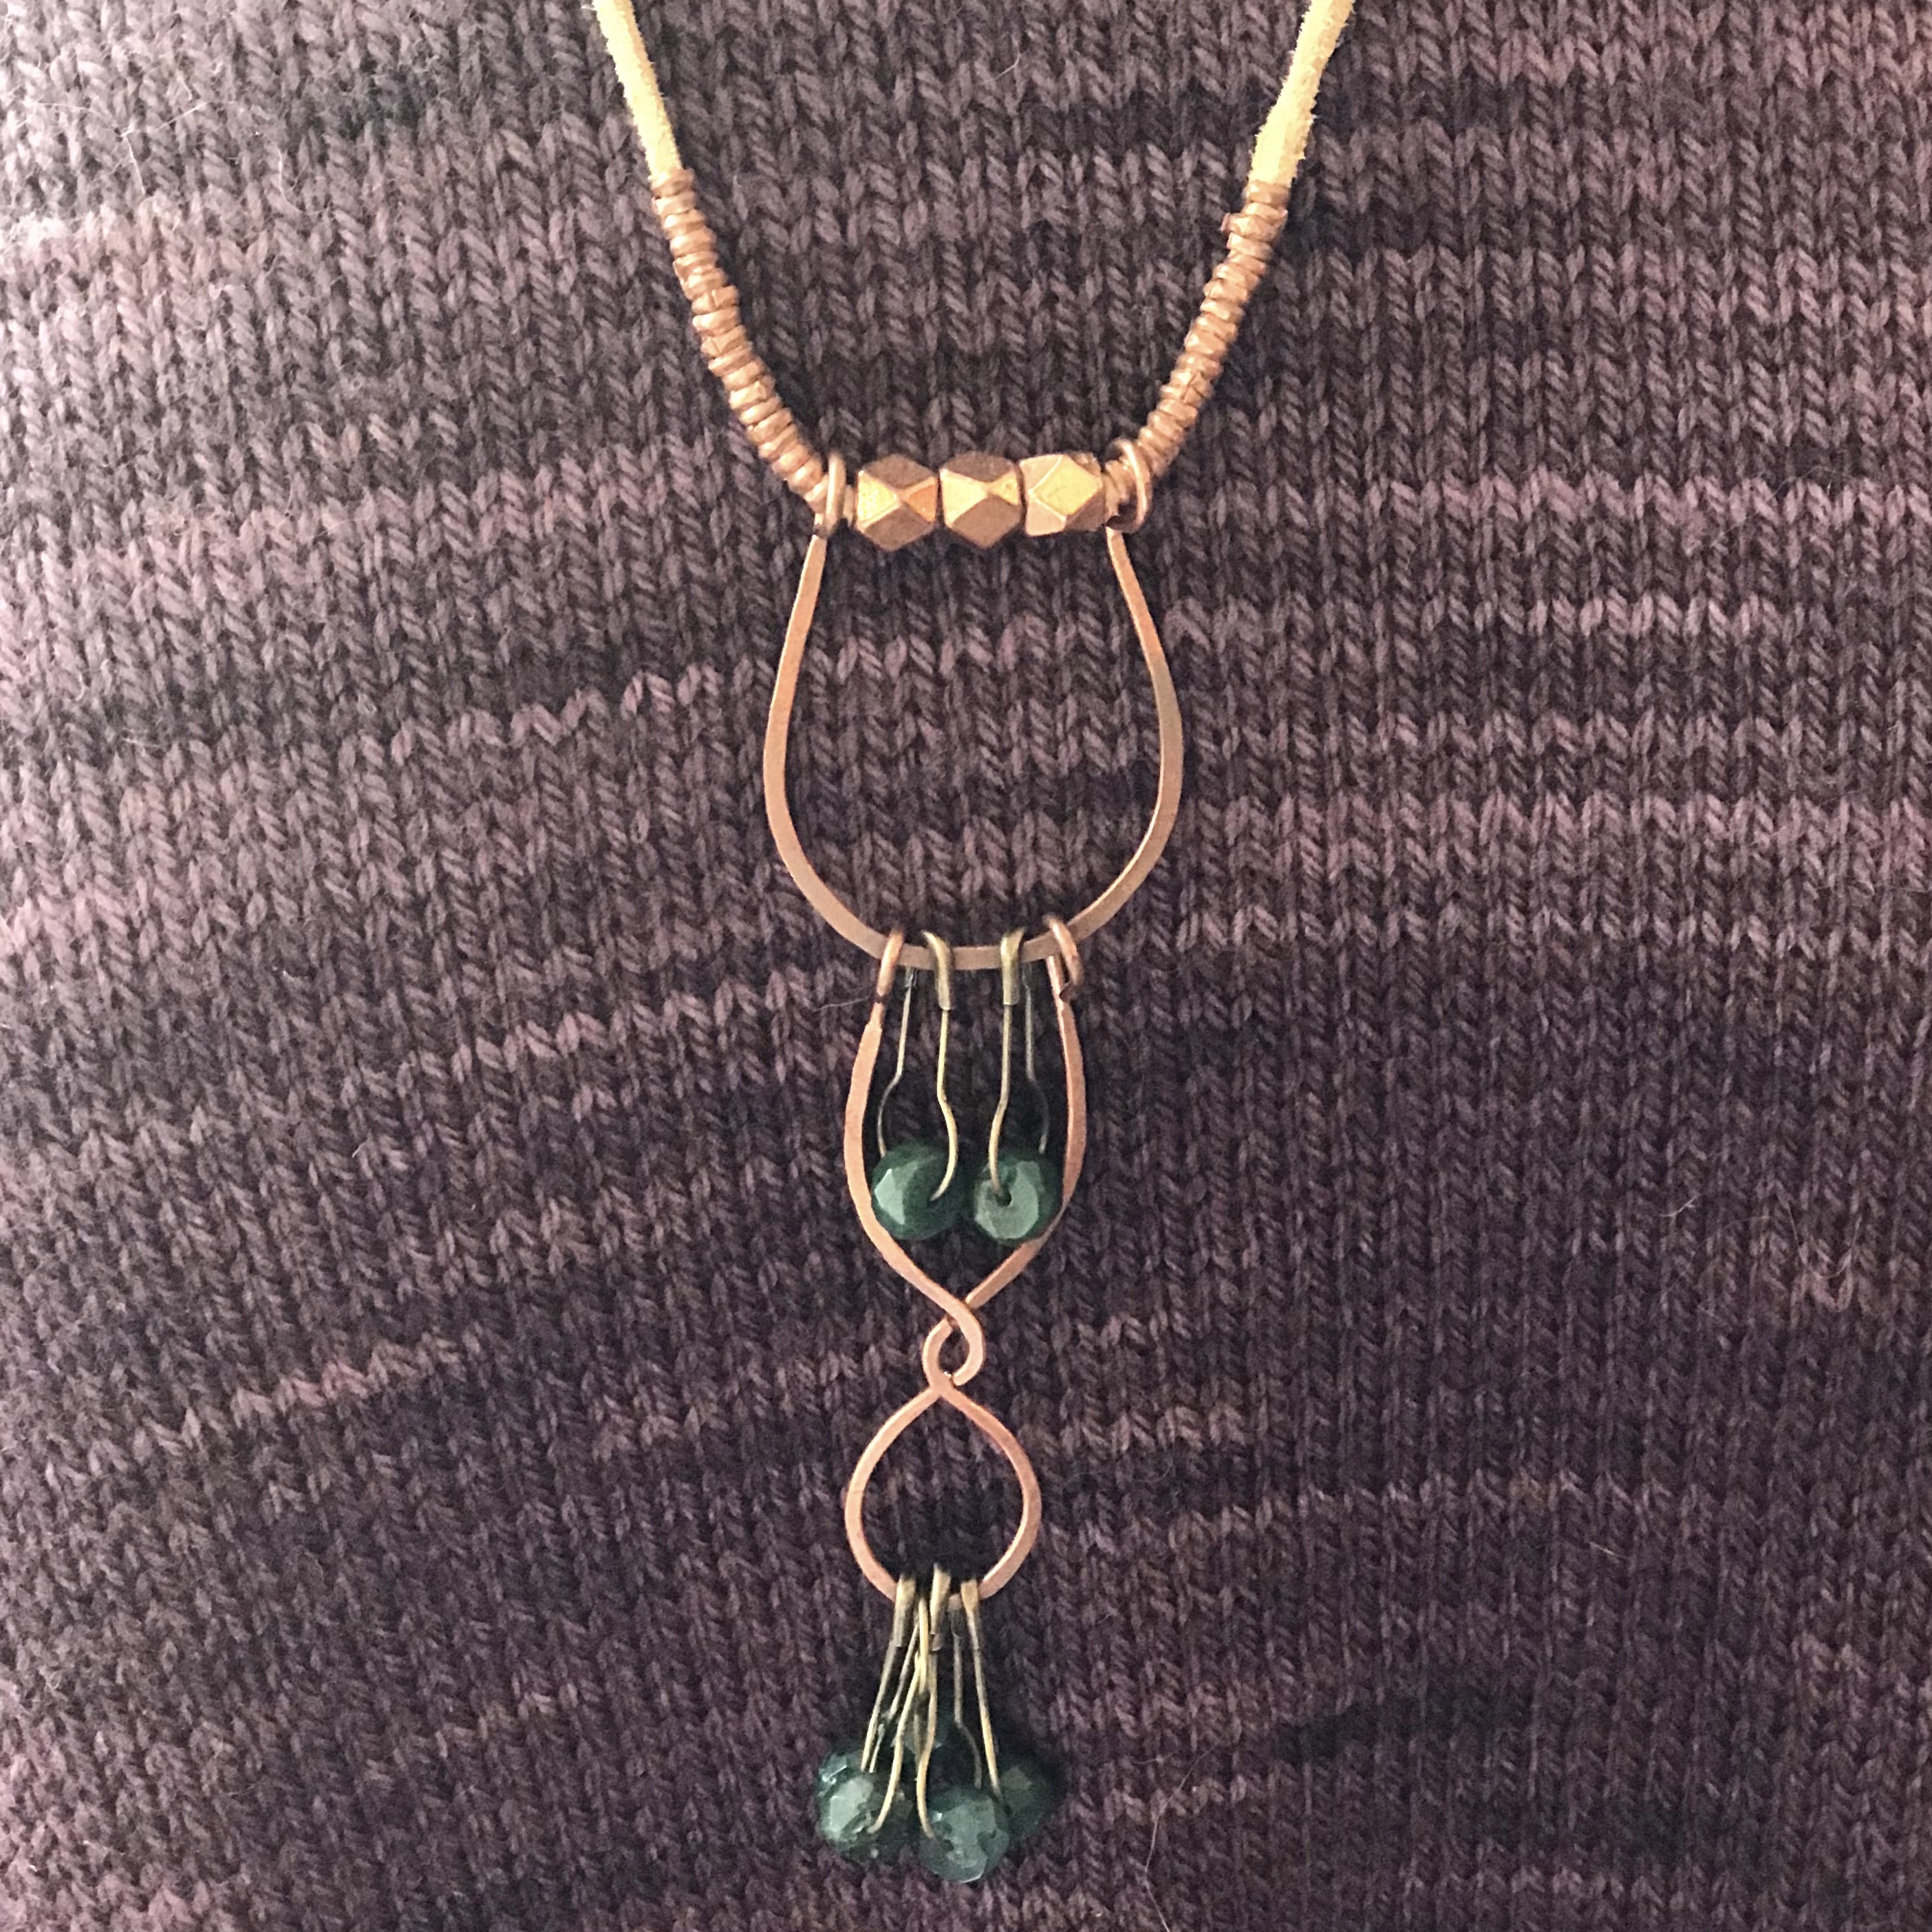 stitch marker necklace